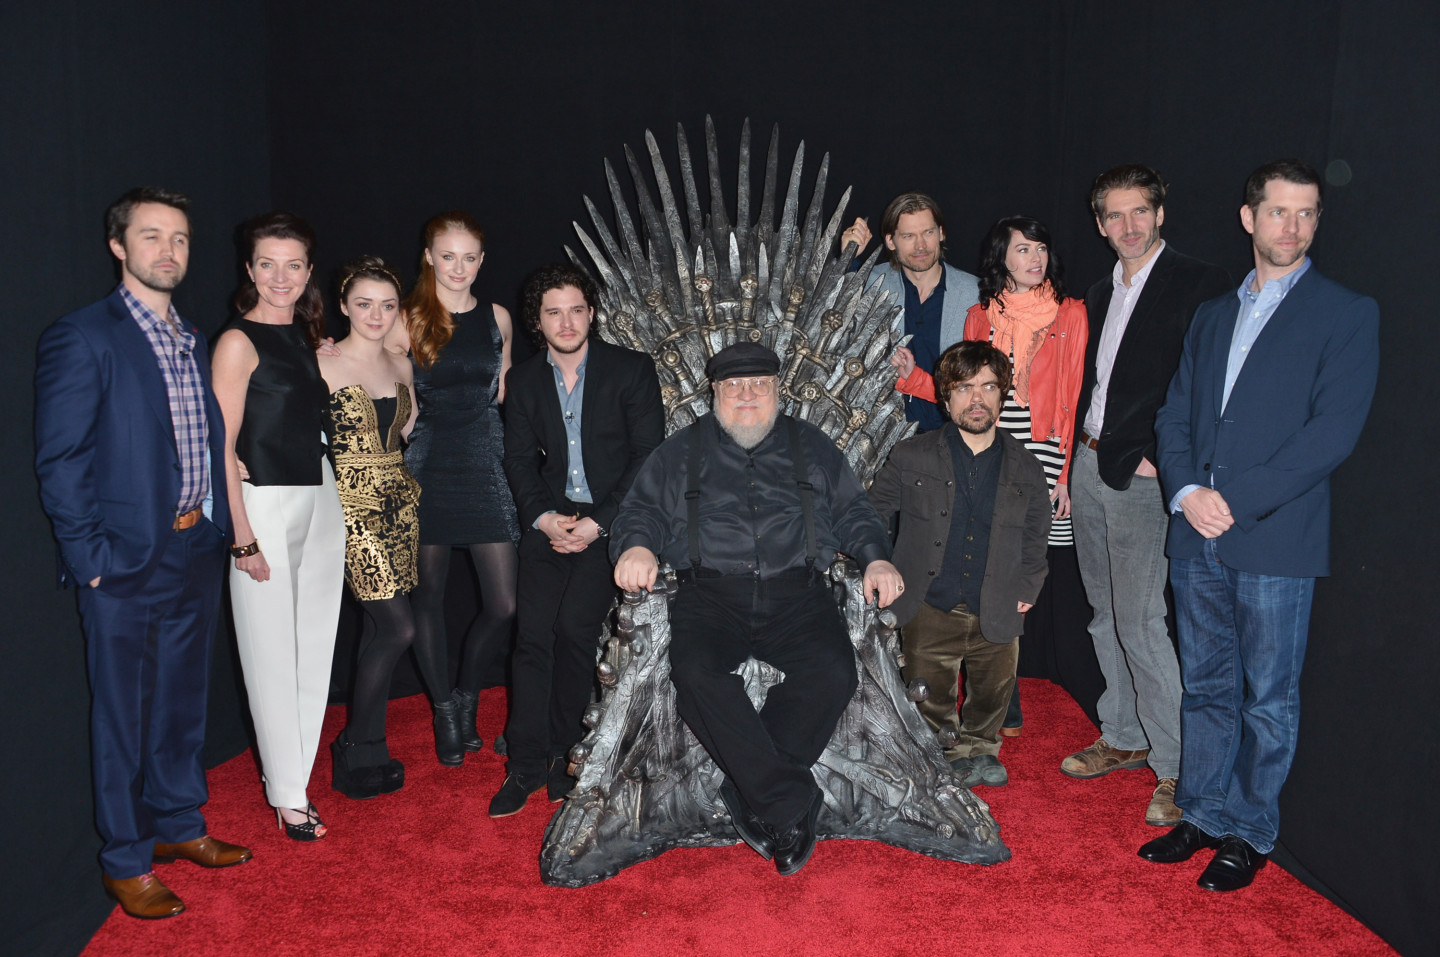 Джордж Мартин в окружении создателей и актеров сериала «Игра престолов»